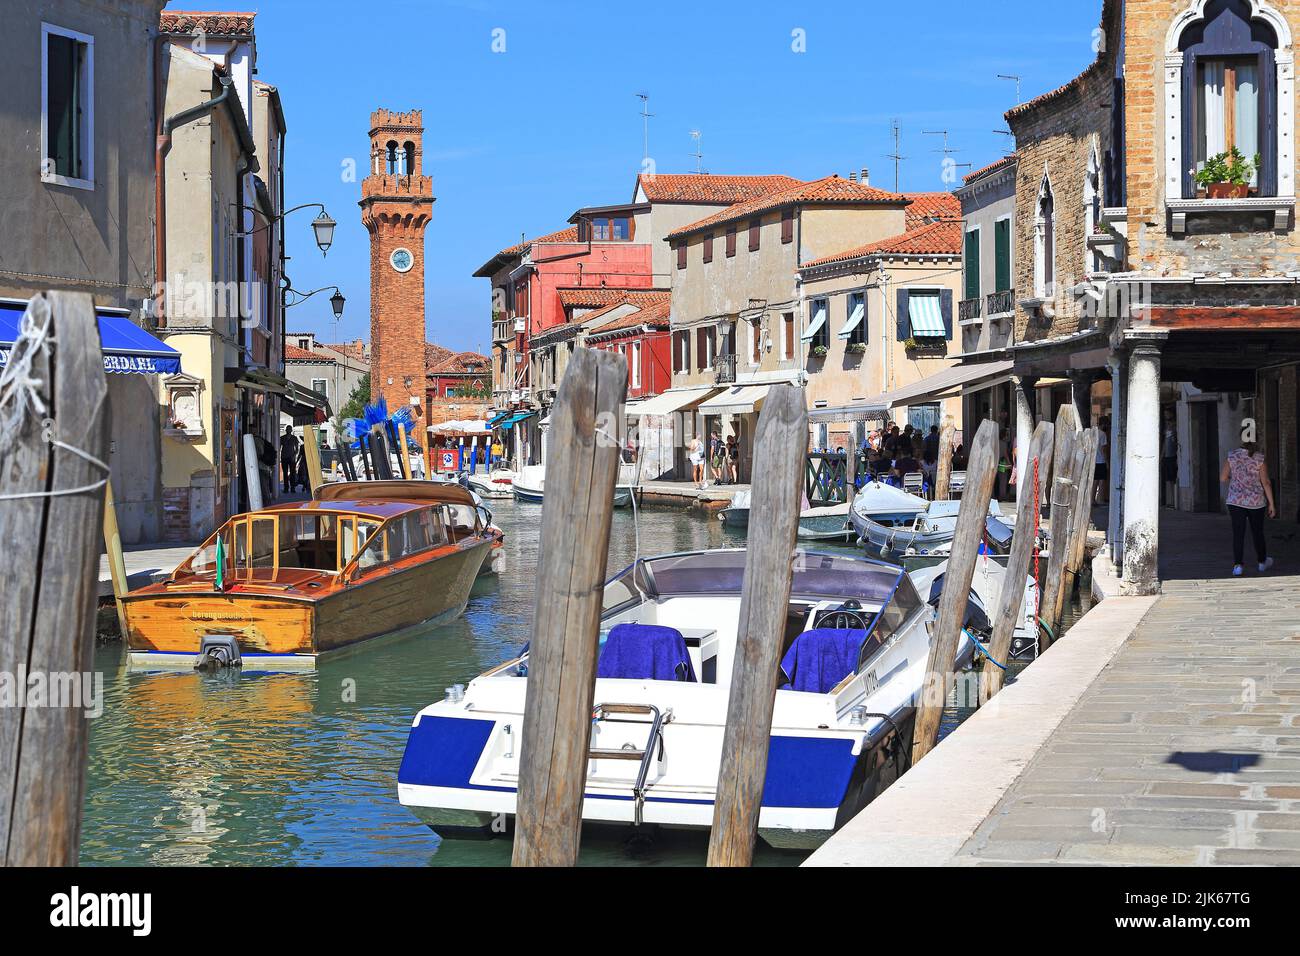 VENISE, ITALIE - 9 SEPTEMBRE 2018 : il s'agit du canal Rio del Vetrai et de la tour de l'horloge sur l'île de Murano. Banque D'Images